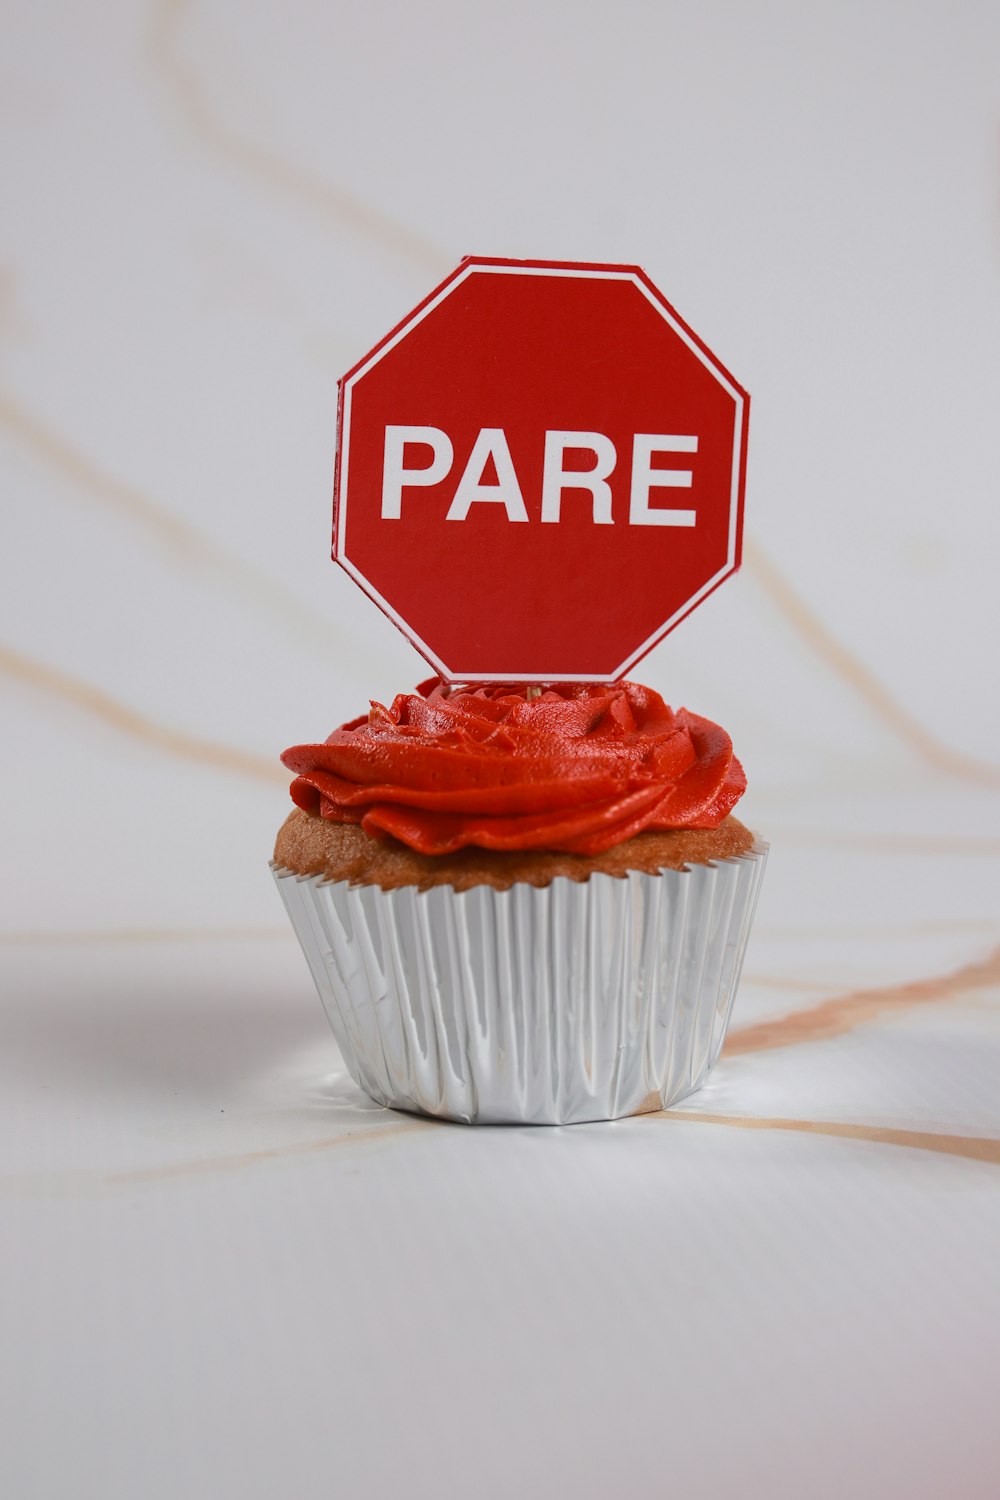 一時停止の標識の前に座っている赤いフロスティングのカップケーキ